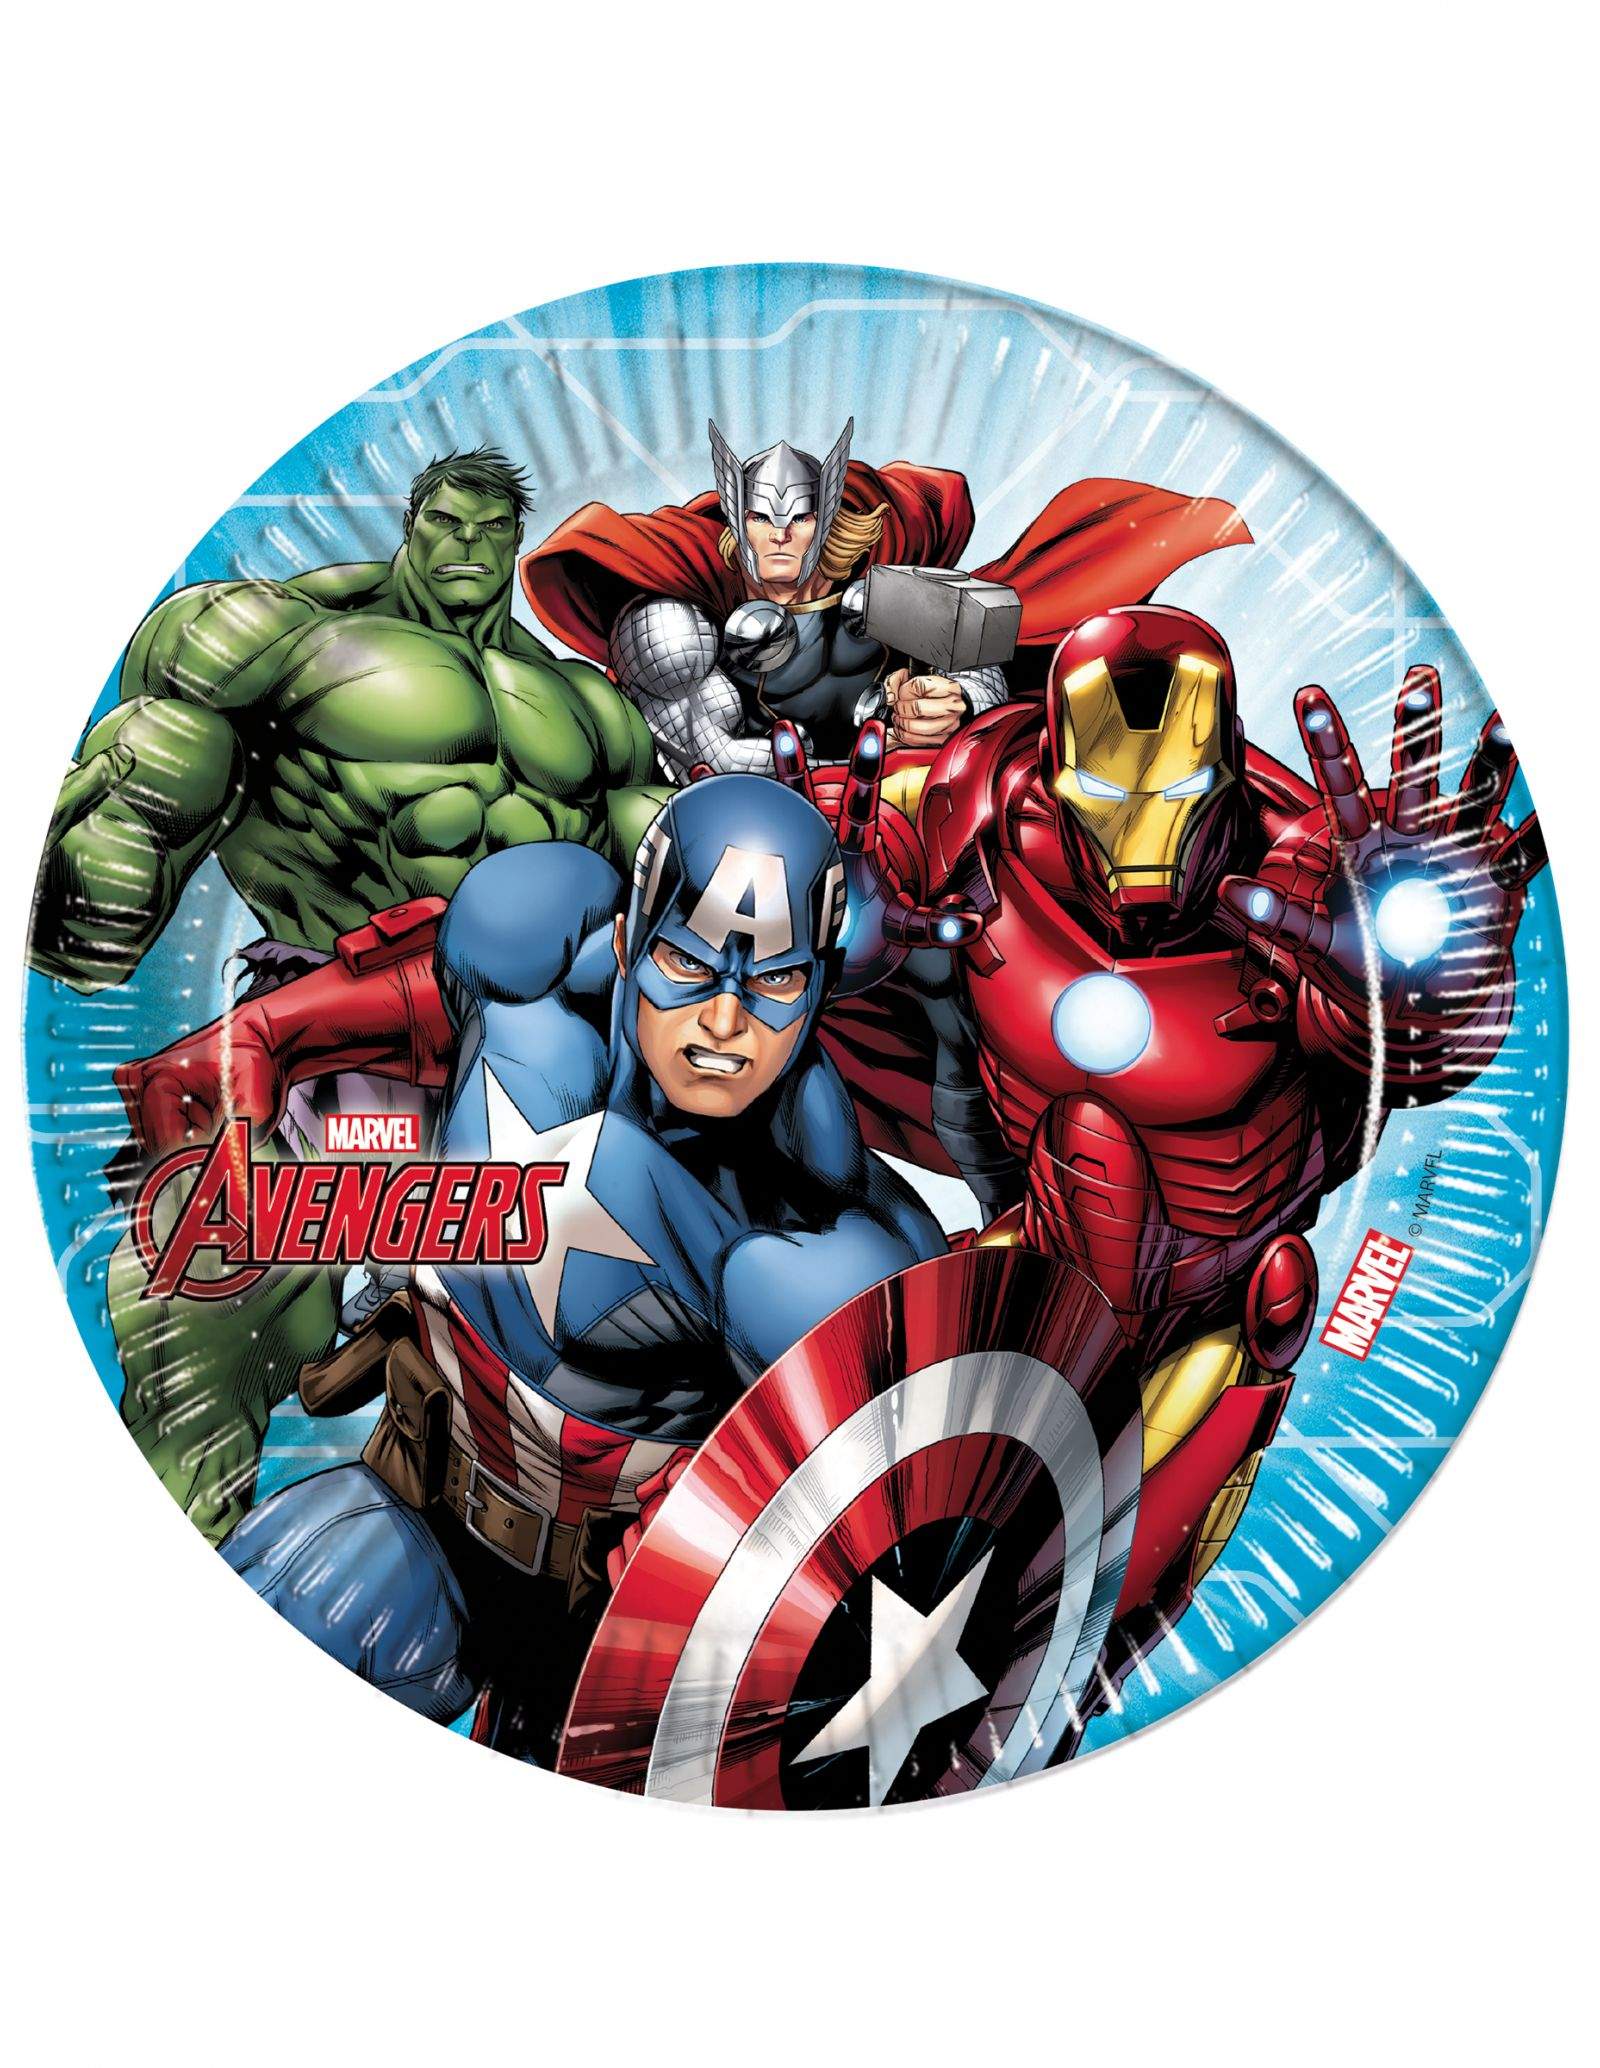 Grand pack de décoration d'anniversaire Avengers Marvel super-héros